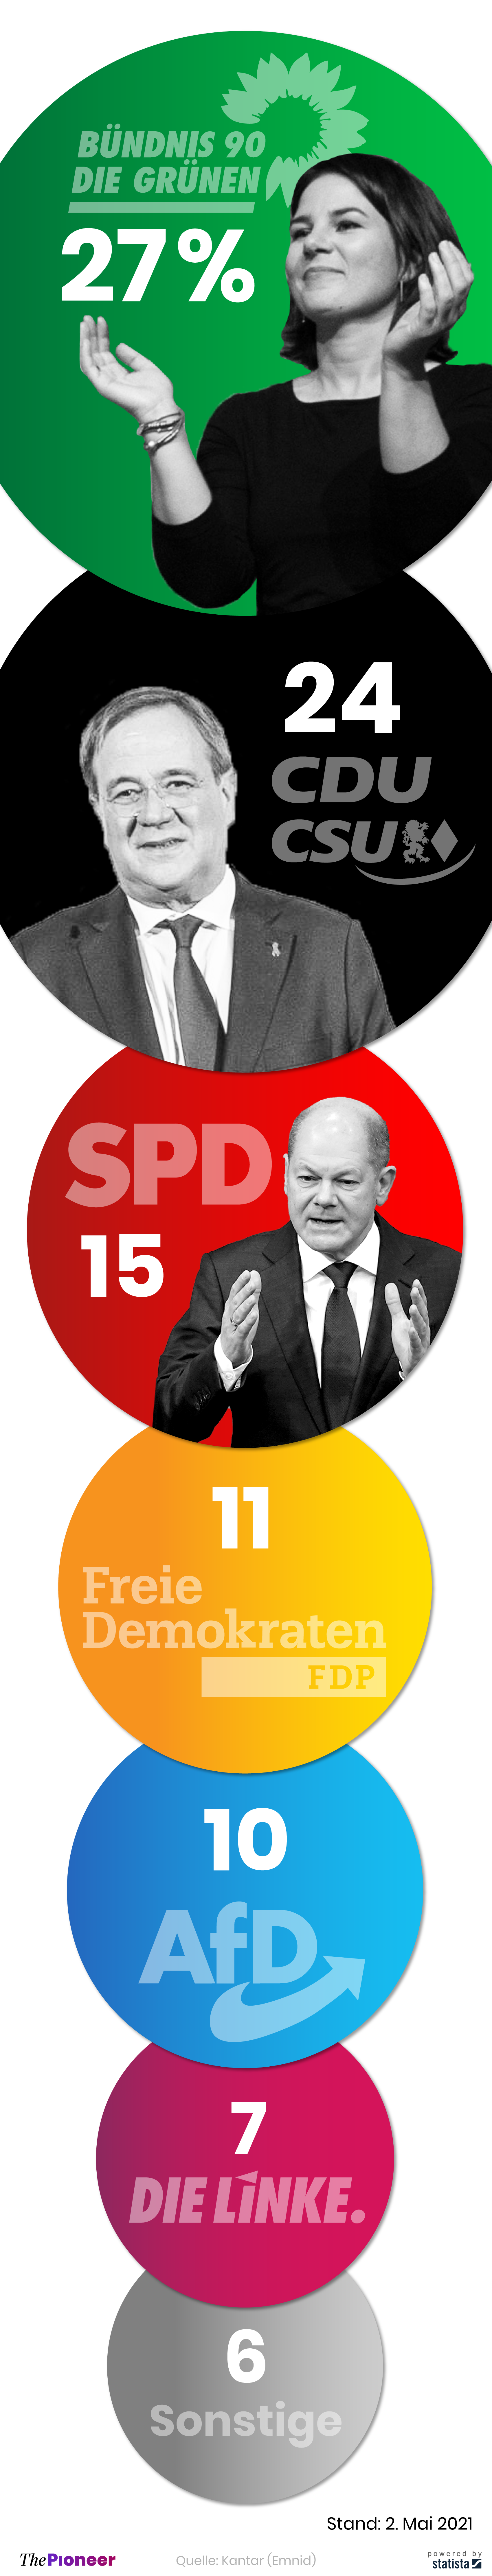 Aktuelle Umfragewerte zur Bundestagswahl in Deutschland, in Prozent